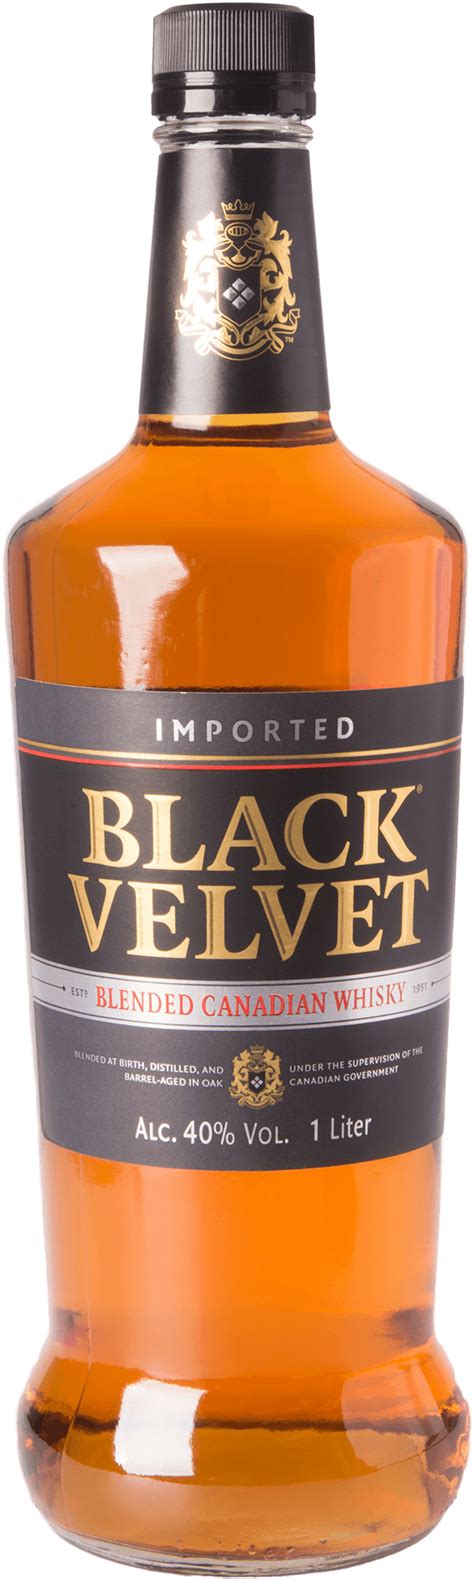 Black Velvet Canadian Blended Whisky 40 10l Kanada